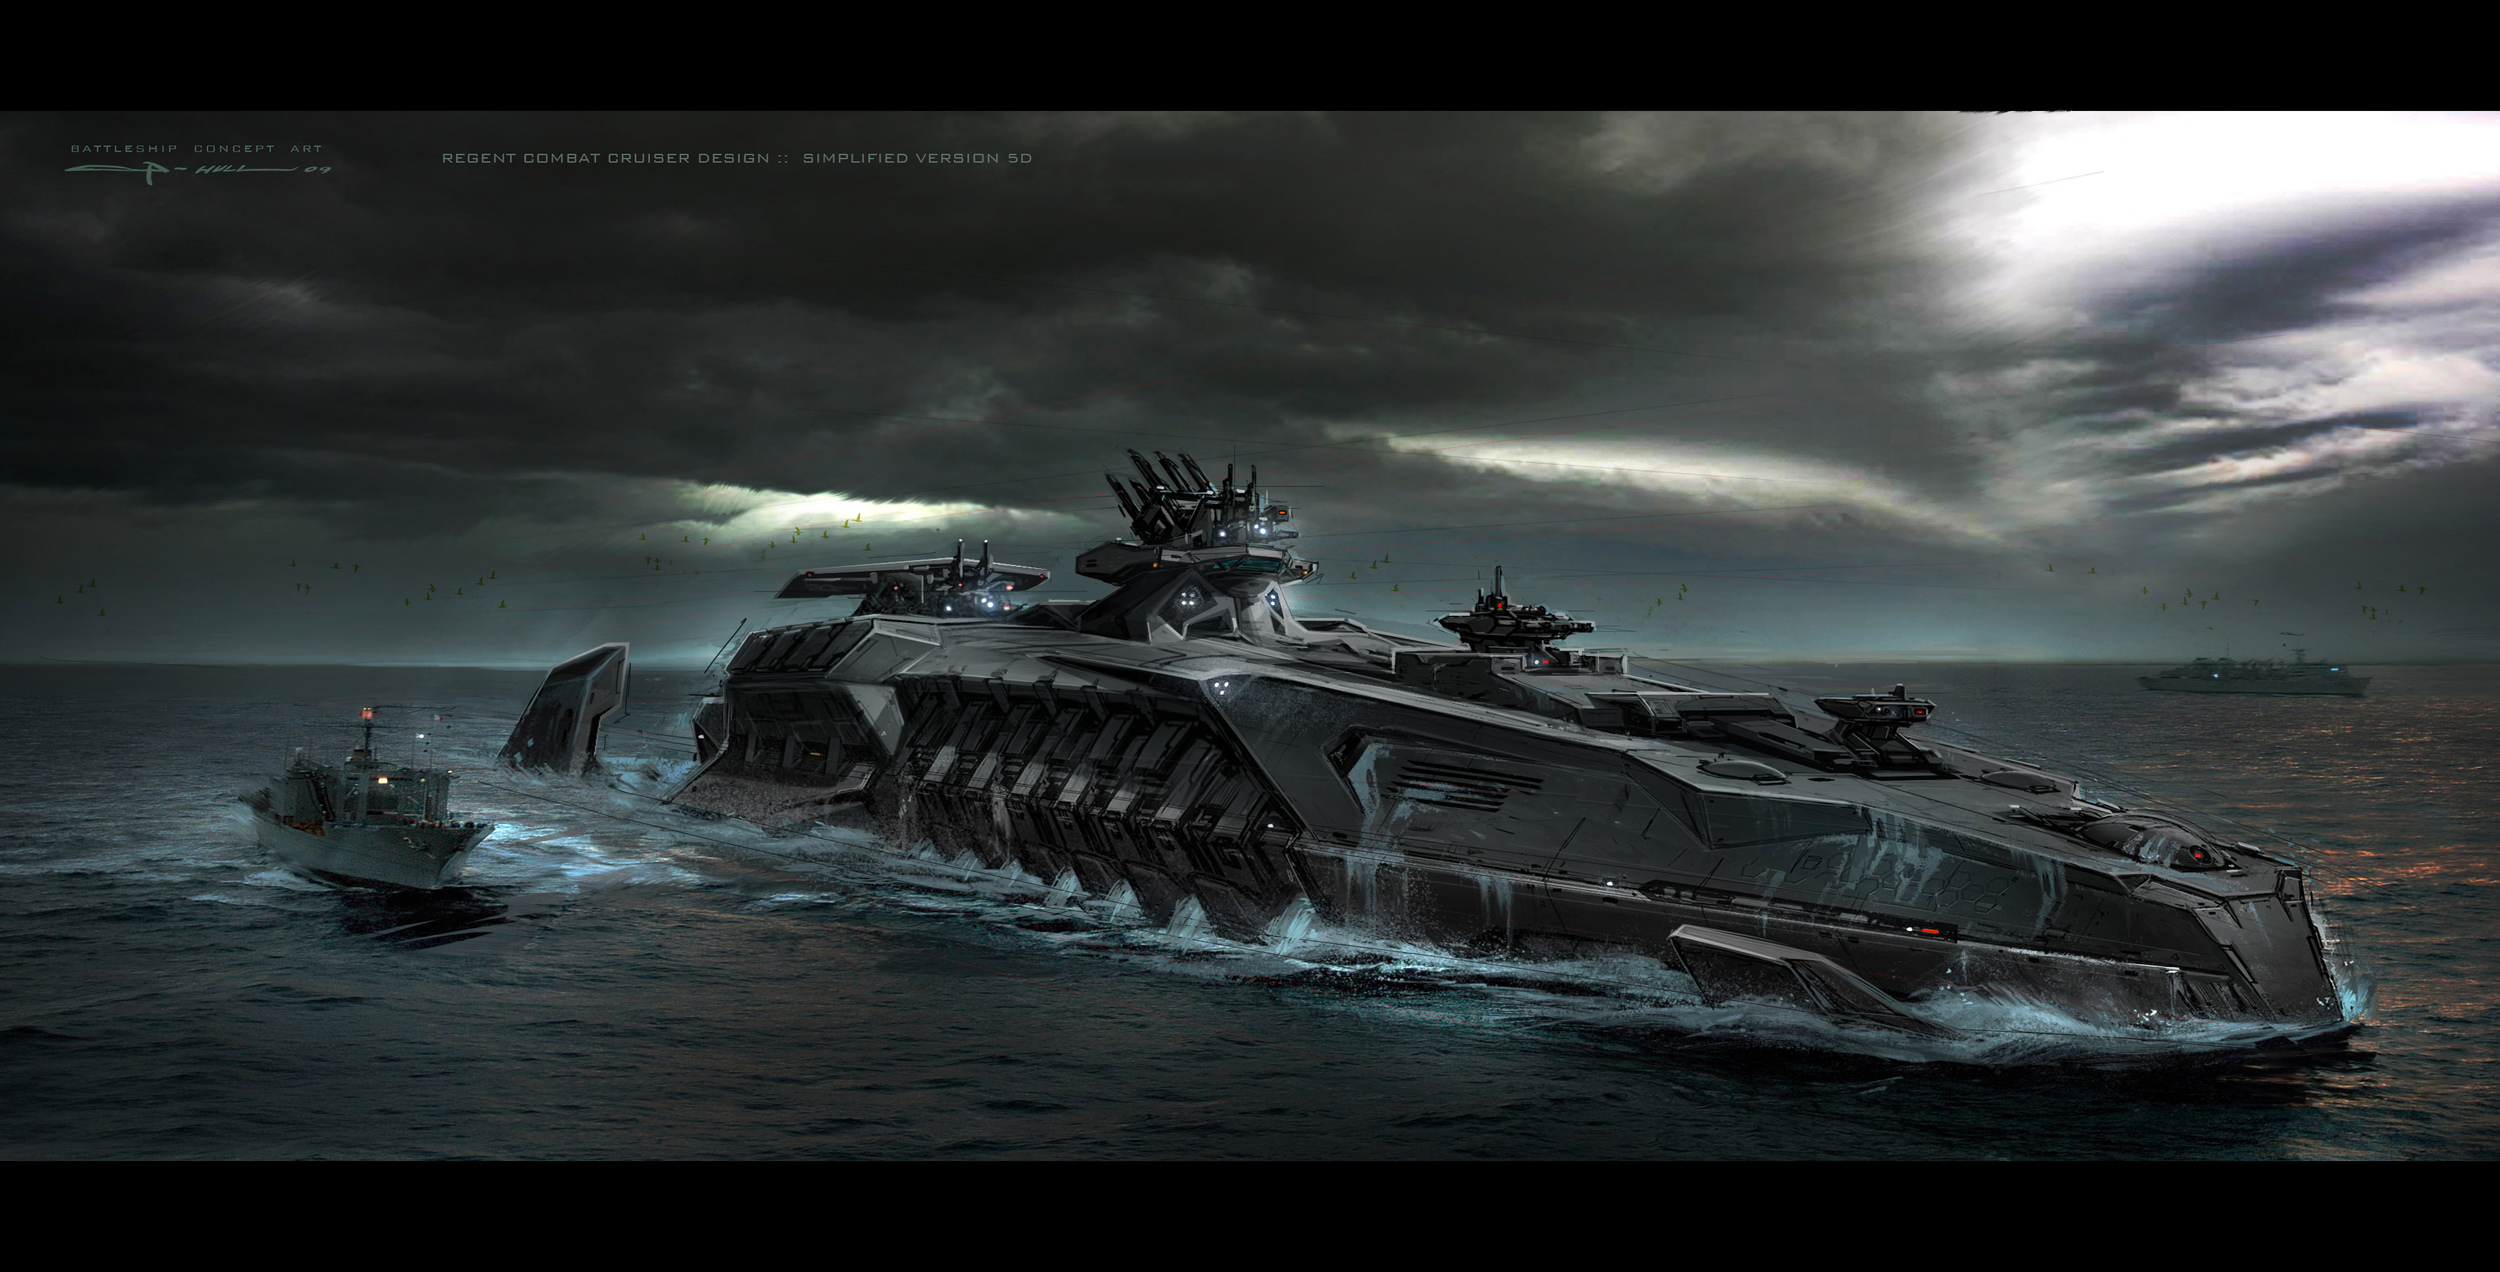 Battleship8_simplifiedV5d_gh copy.jpg